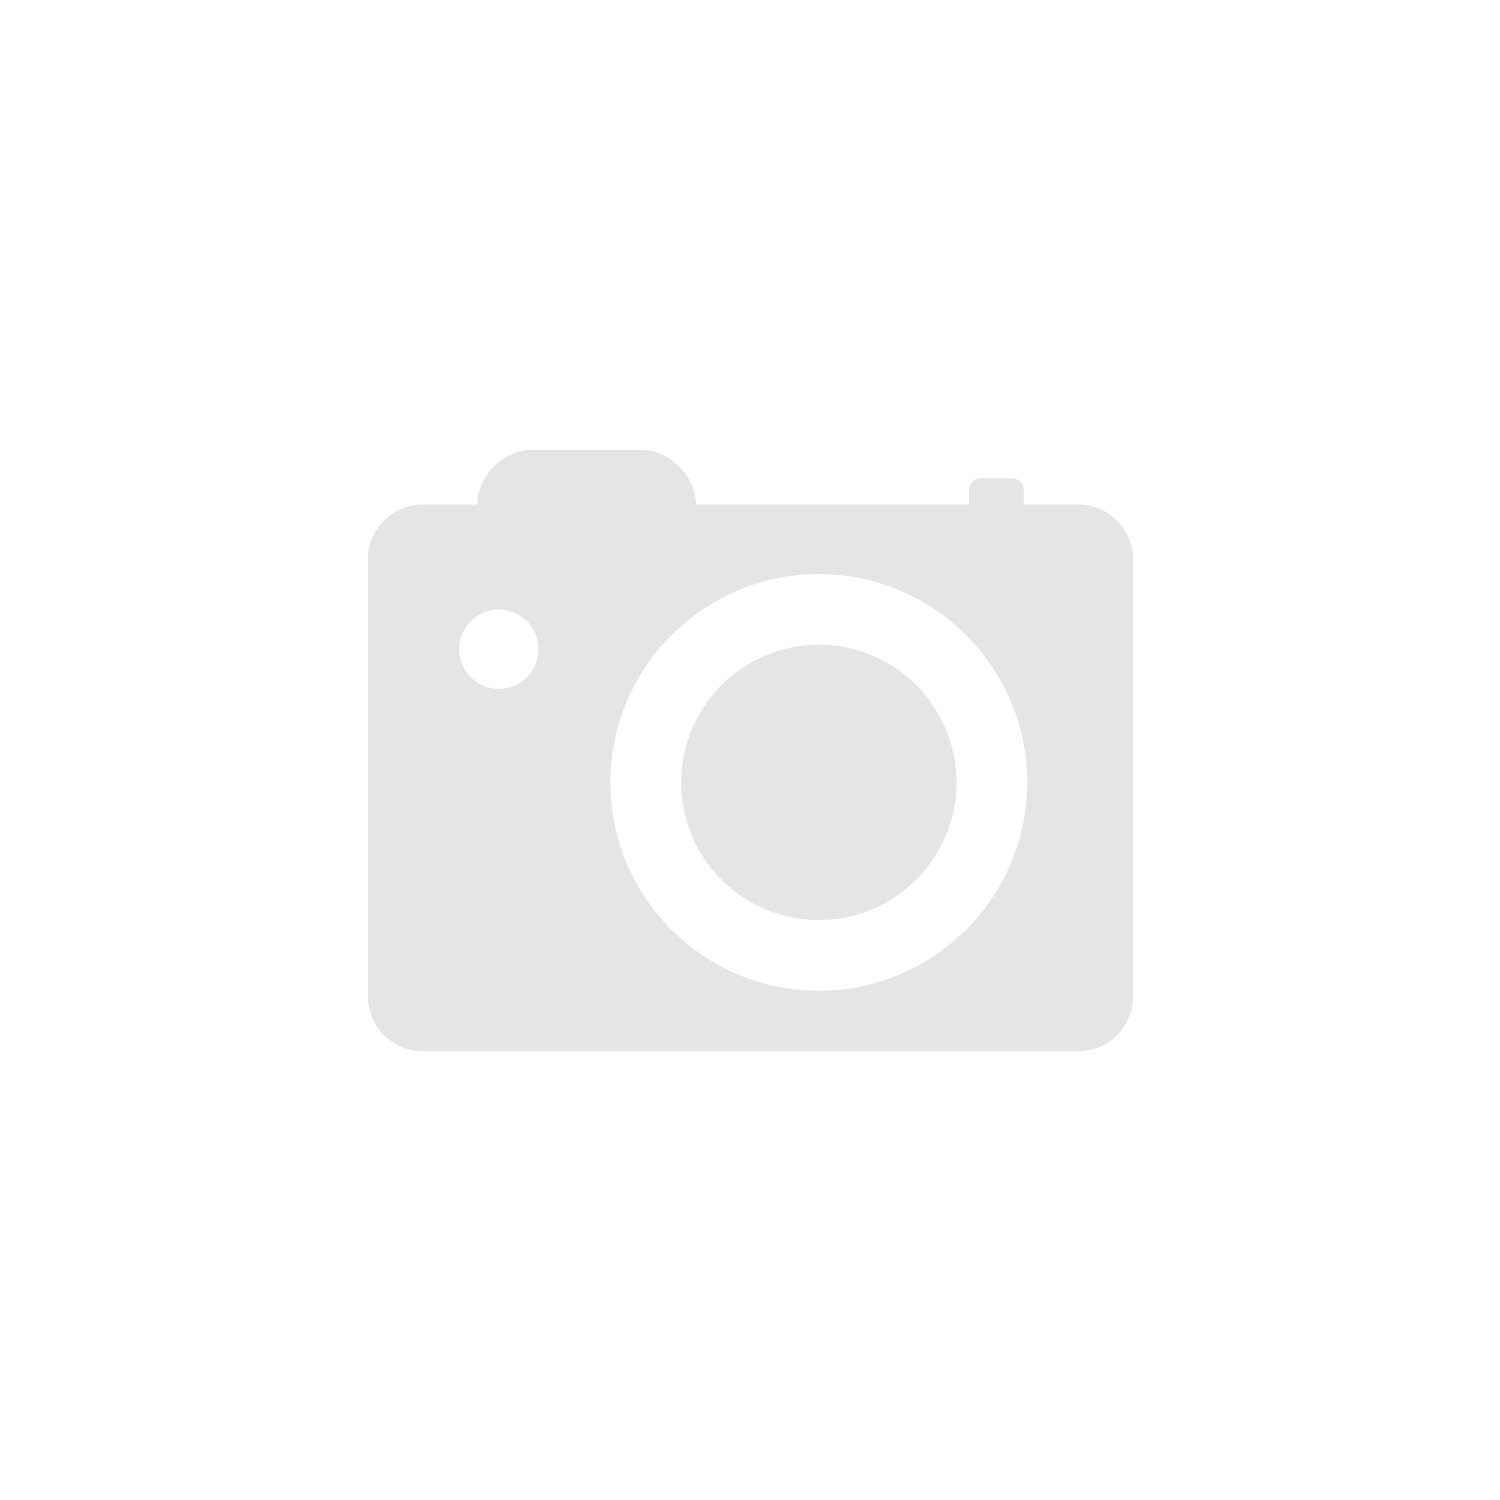 Proanti Sommer Regen mit Visierwischer schwarz ab 29,99 € | Preisvergleich  bei